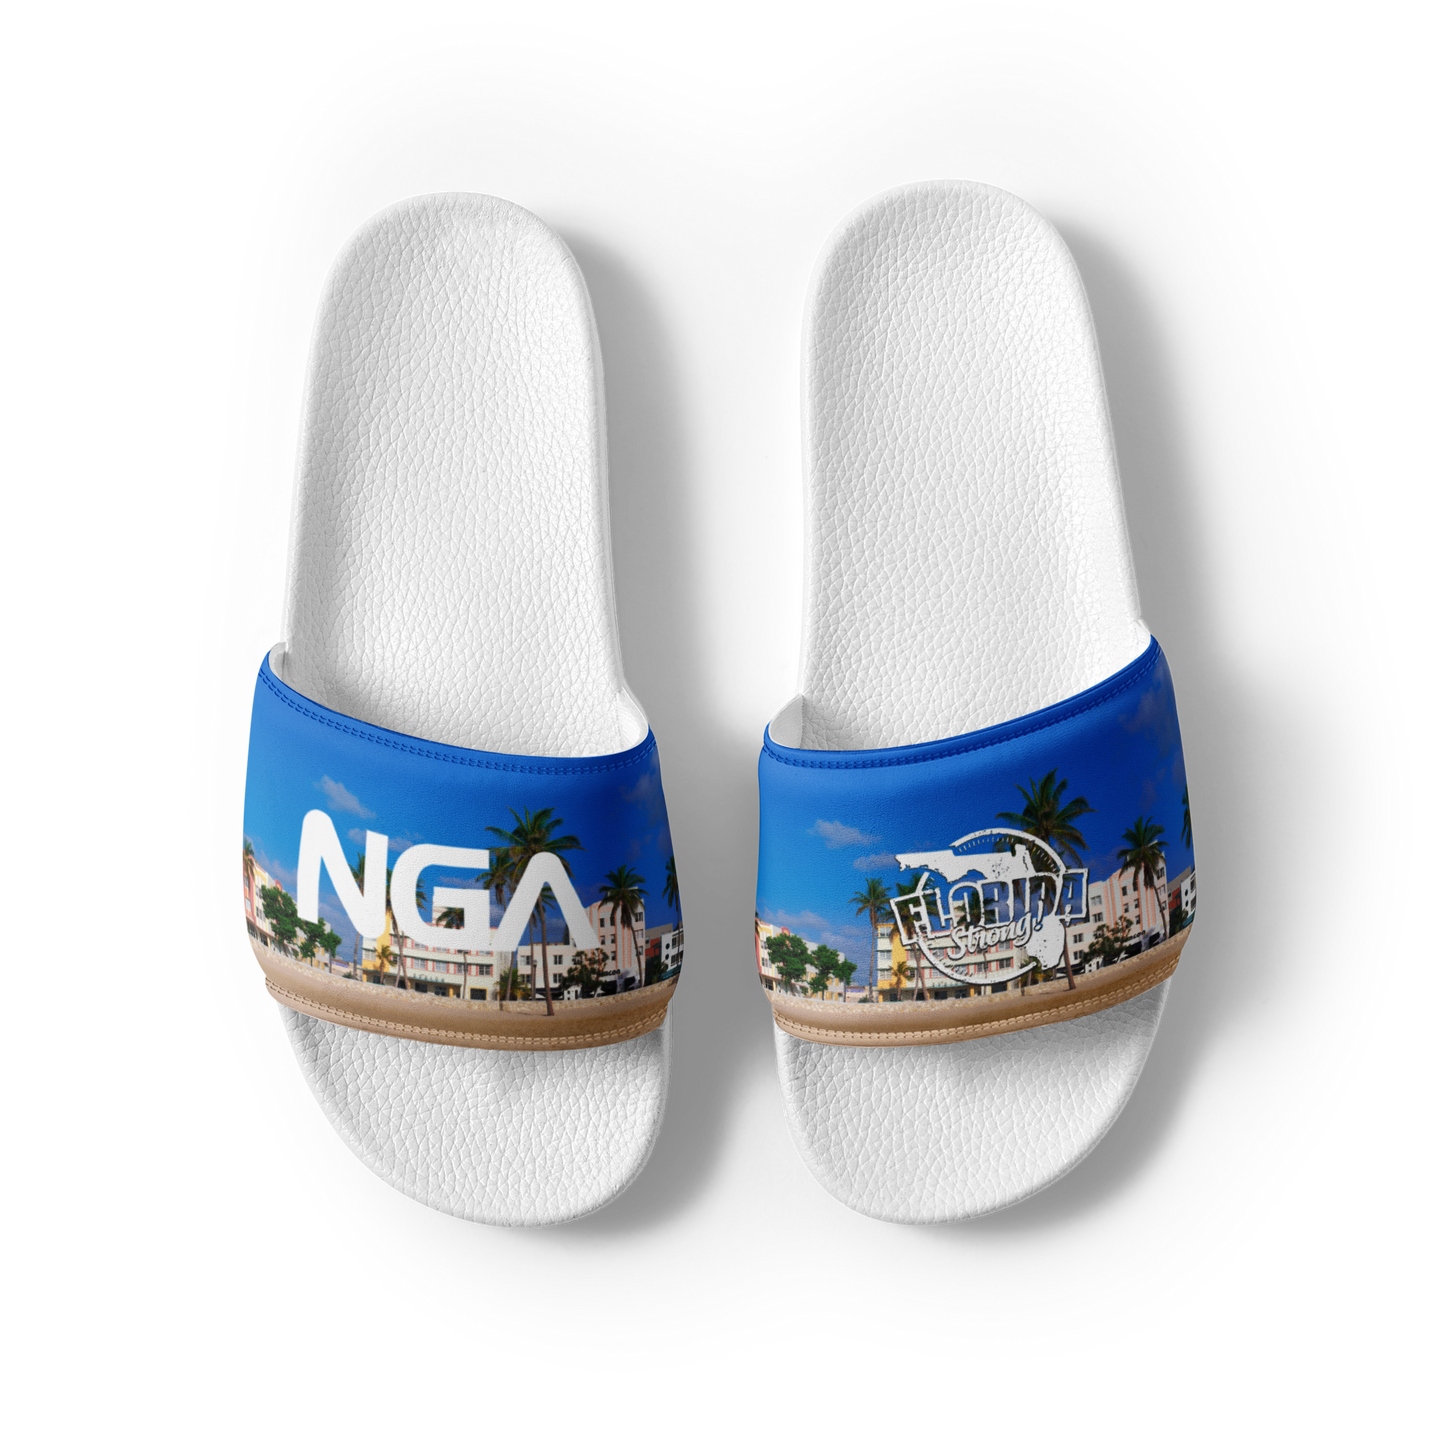 NGA Florida Strong - Women's slides